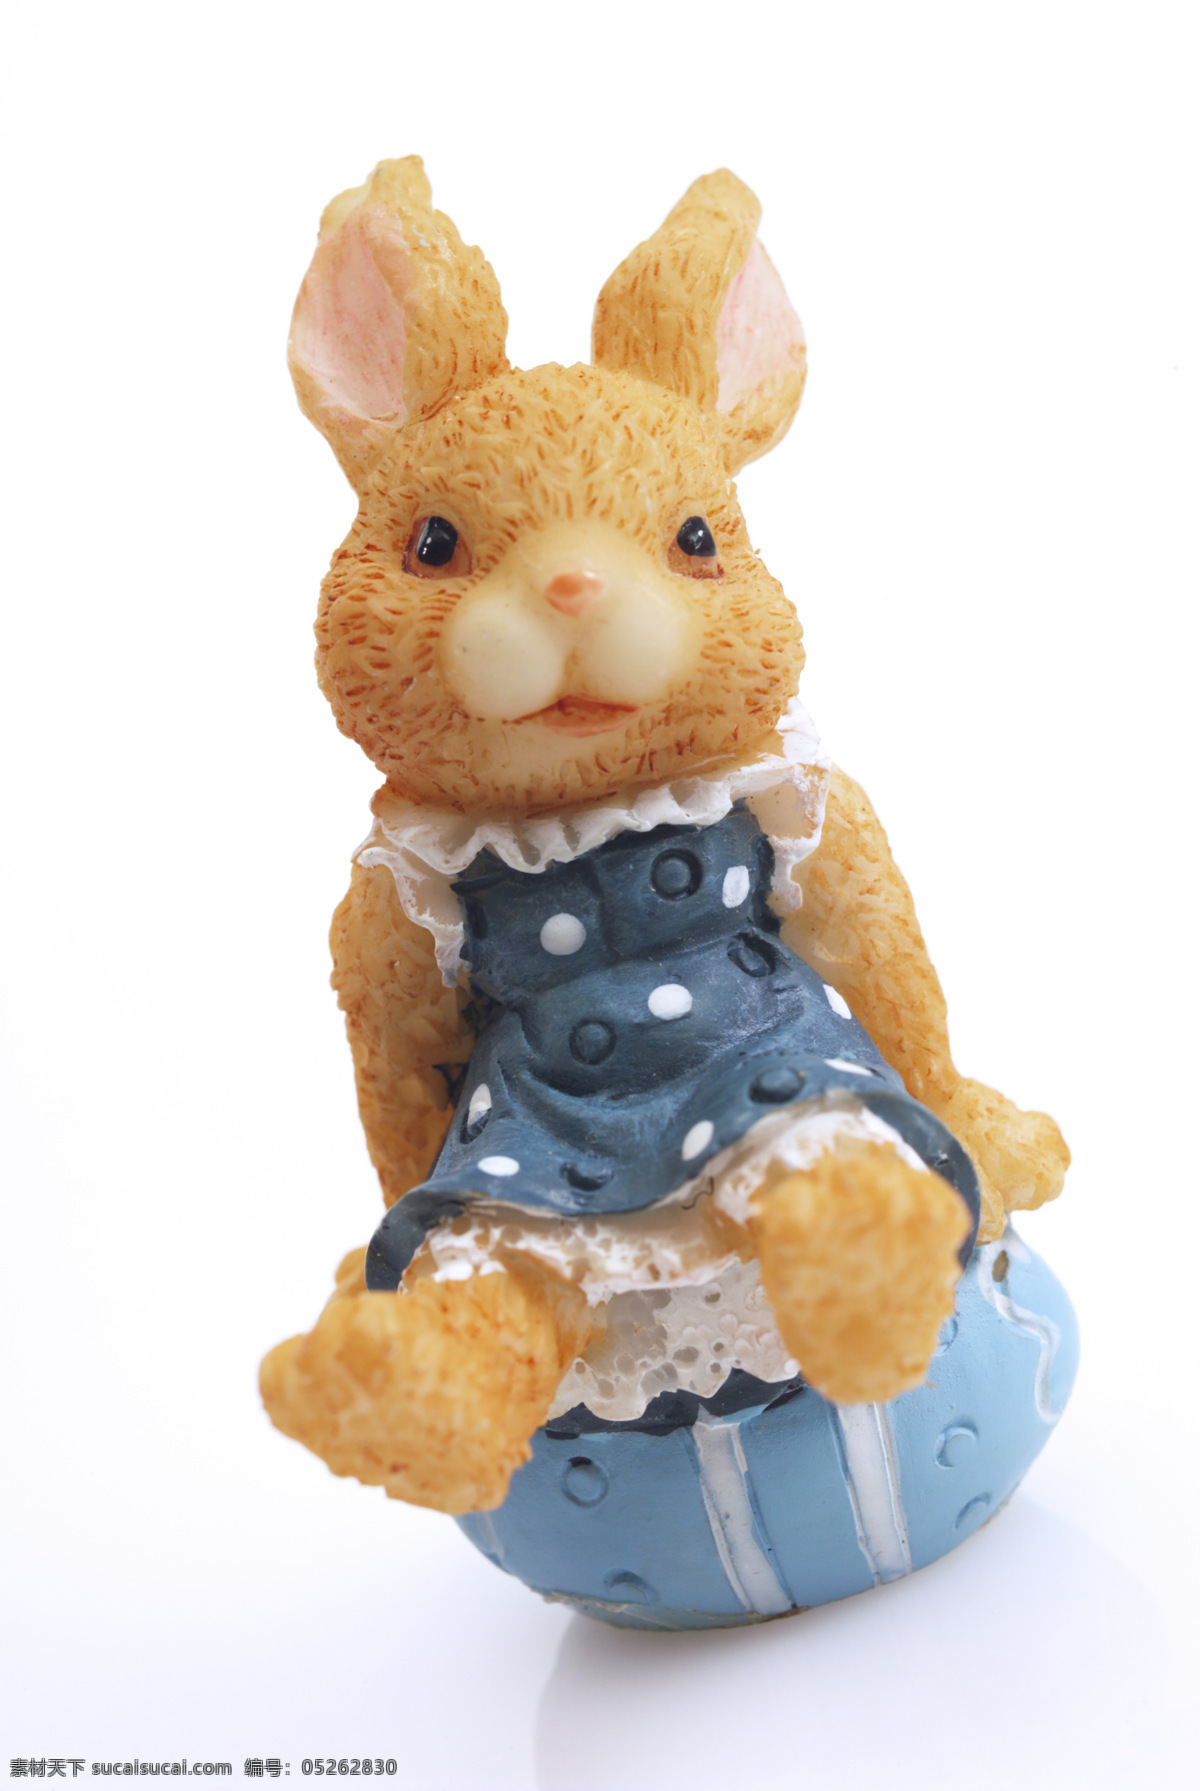 玩具 兔 摆件 彩蛋 动物 可爱 生活百科 生活素材 兔子 玩具兔 小动物 psd源文件